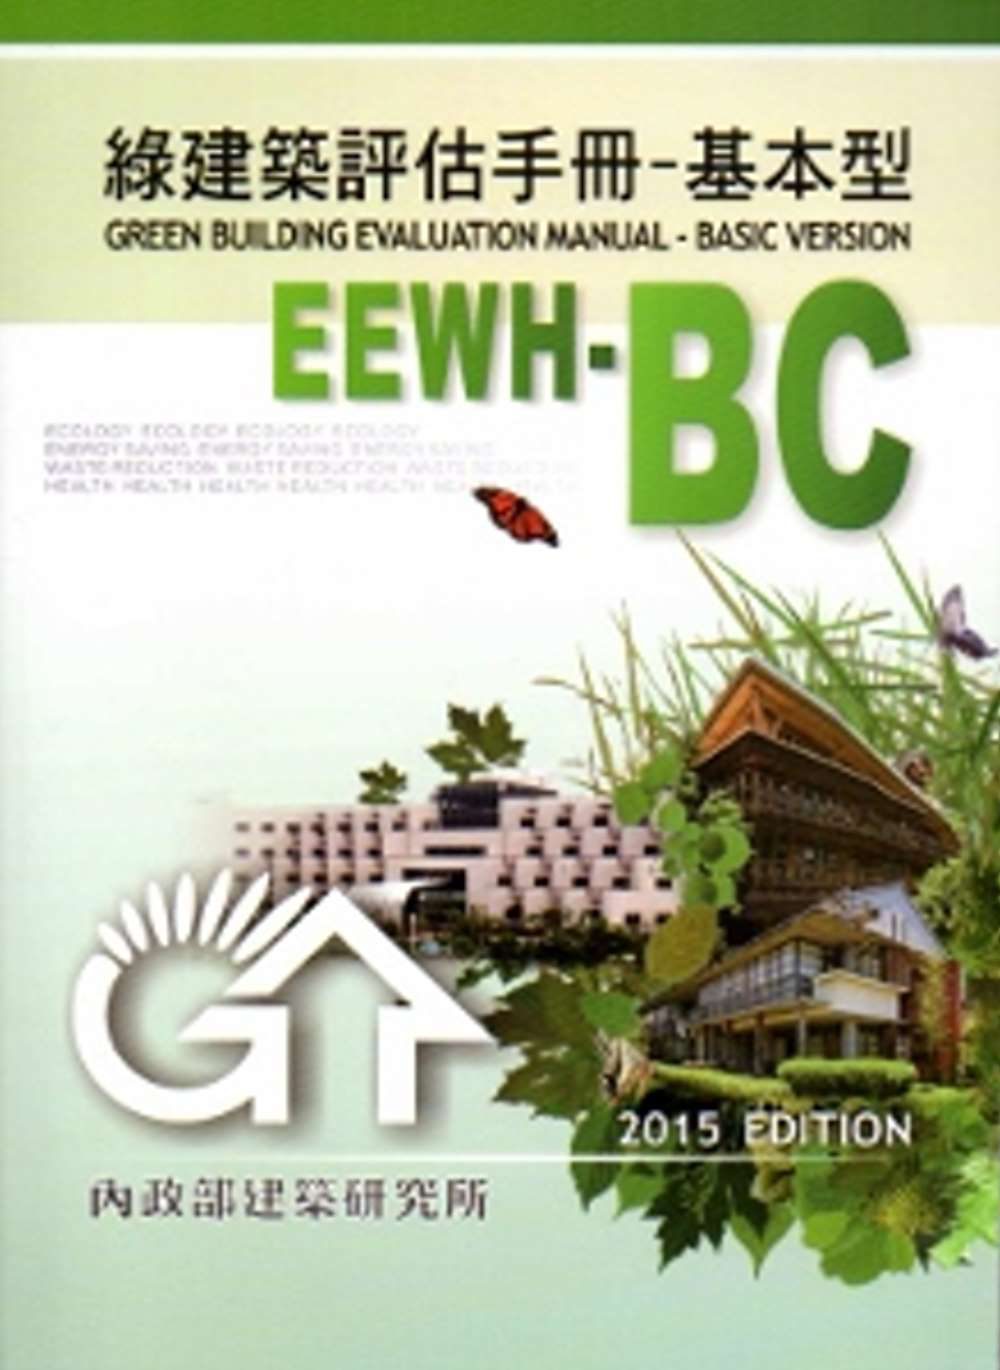 綠建築評估手冊-基本型[2015年版/二版]